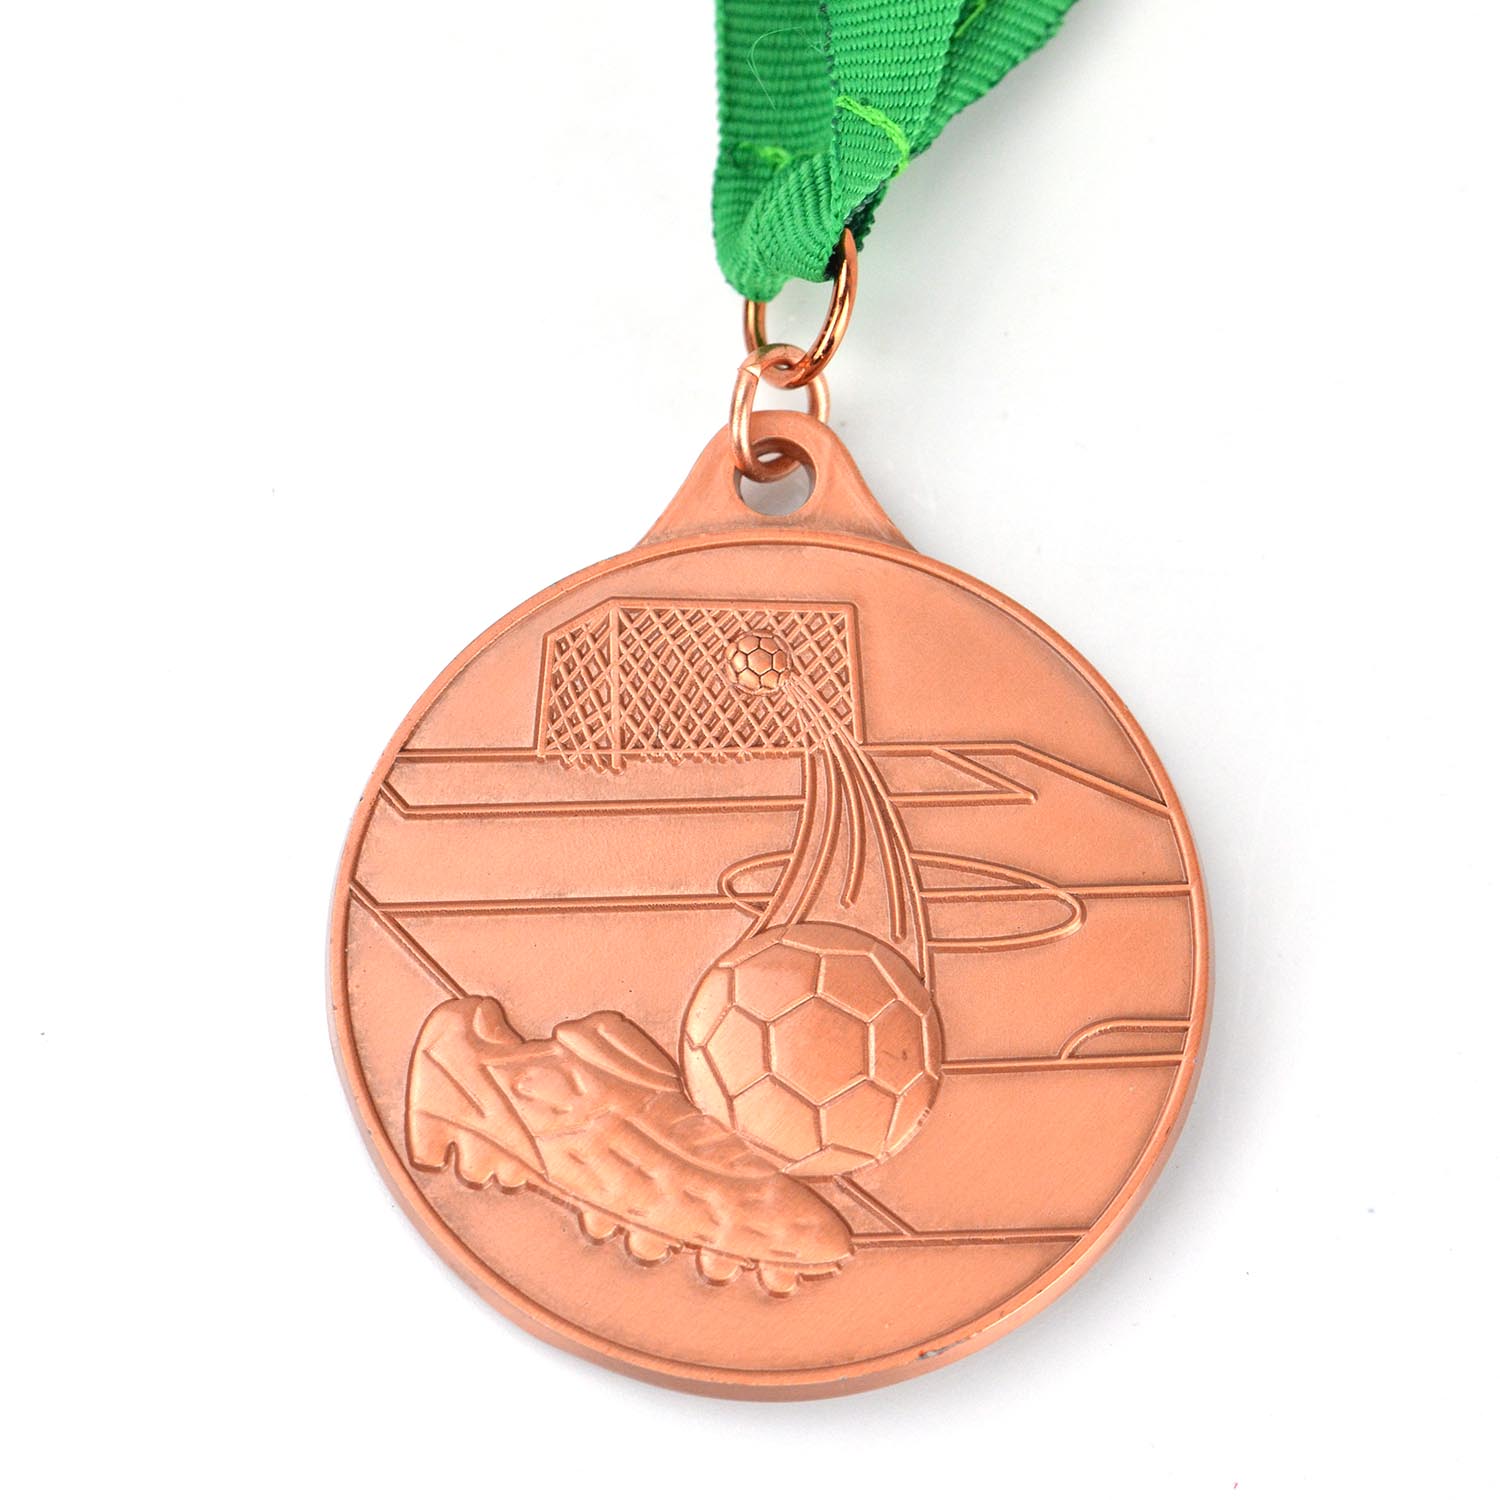 Fabrik Herstellung Souvenir Gold Silber Kupfer Metall Fußball Volleyball Basketball benutzerdefinierte Sportmedaillen Medaillon (9)